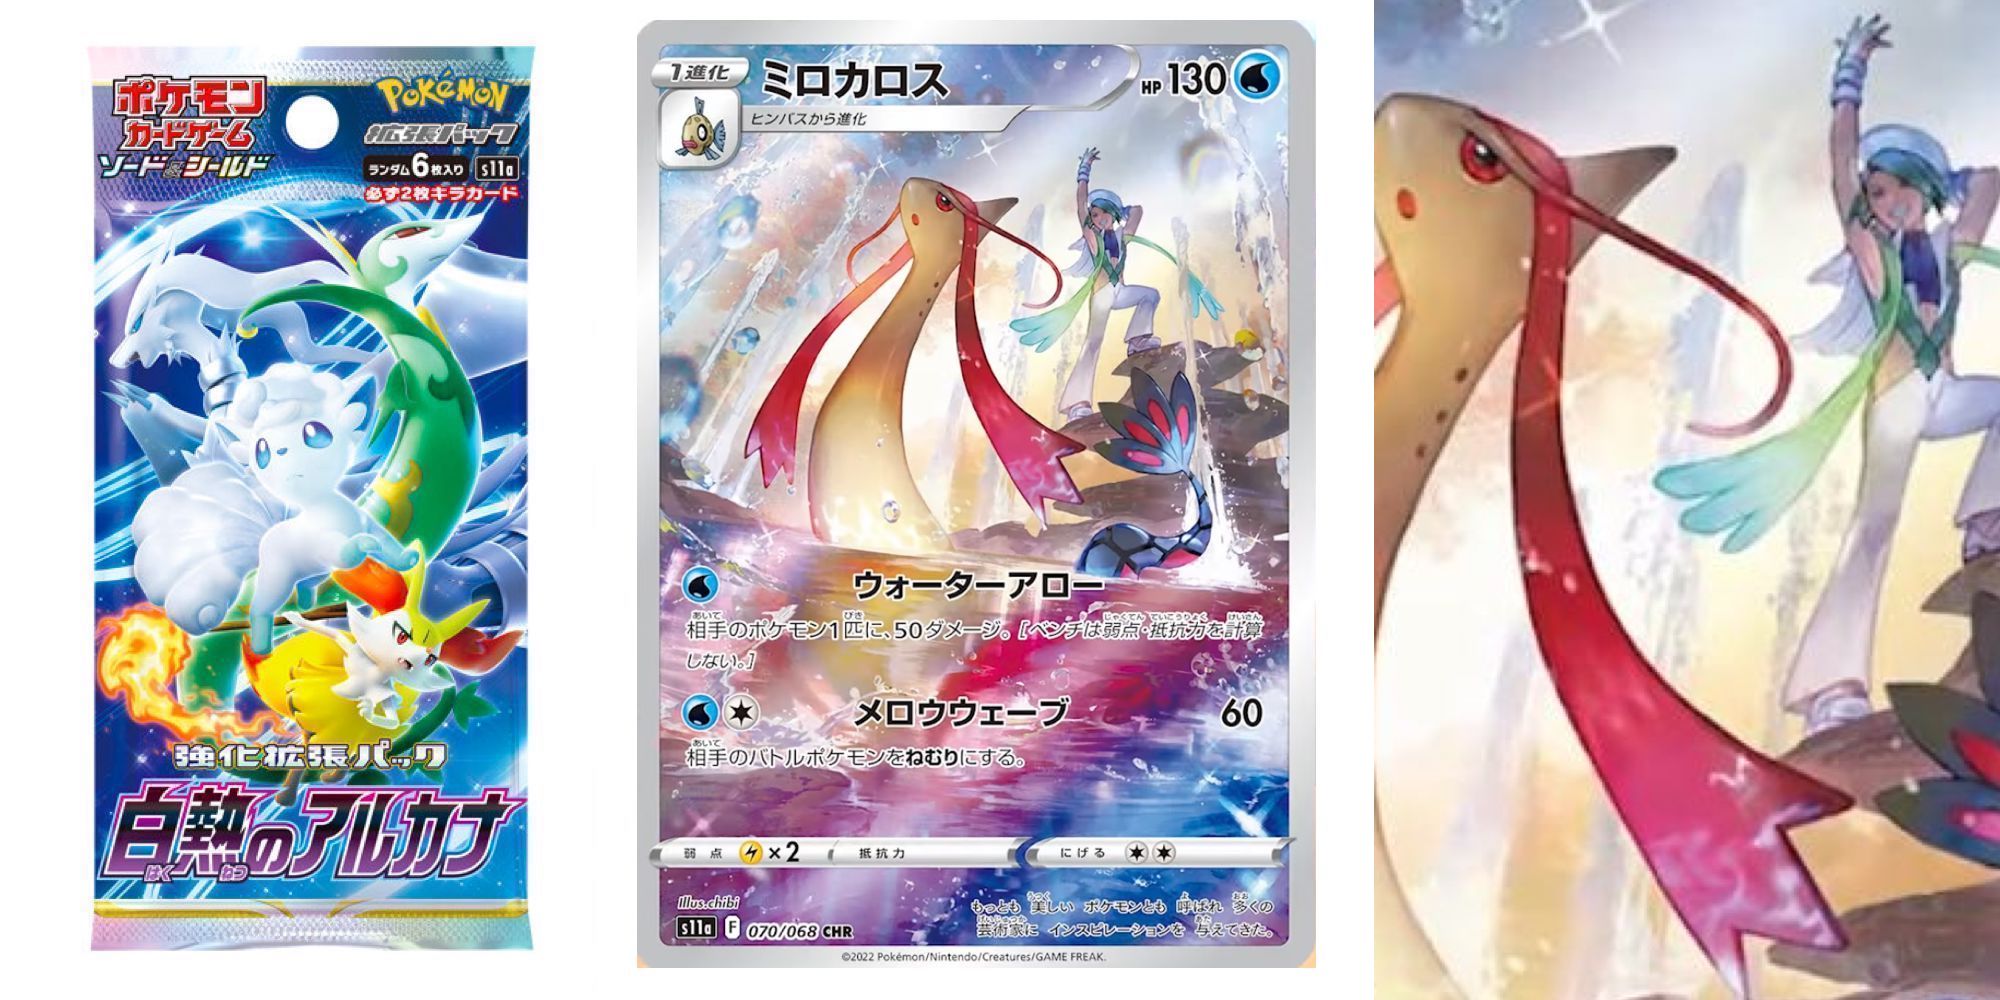 Anime Pokemon Milotic (Pokemon) Shiny Pokémon Wallpaper | Shiny pokemon, Hd  pokemon wallpapers, Pokemon rayquaza